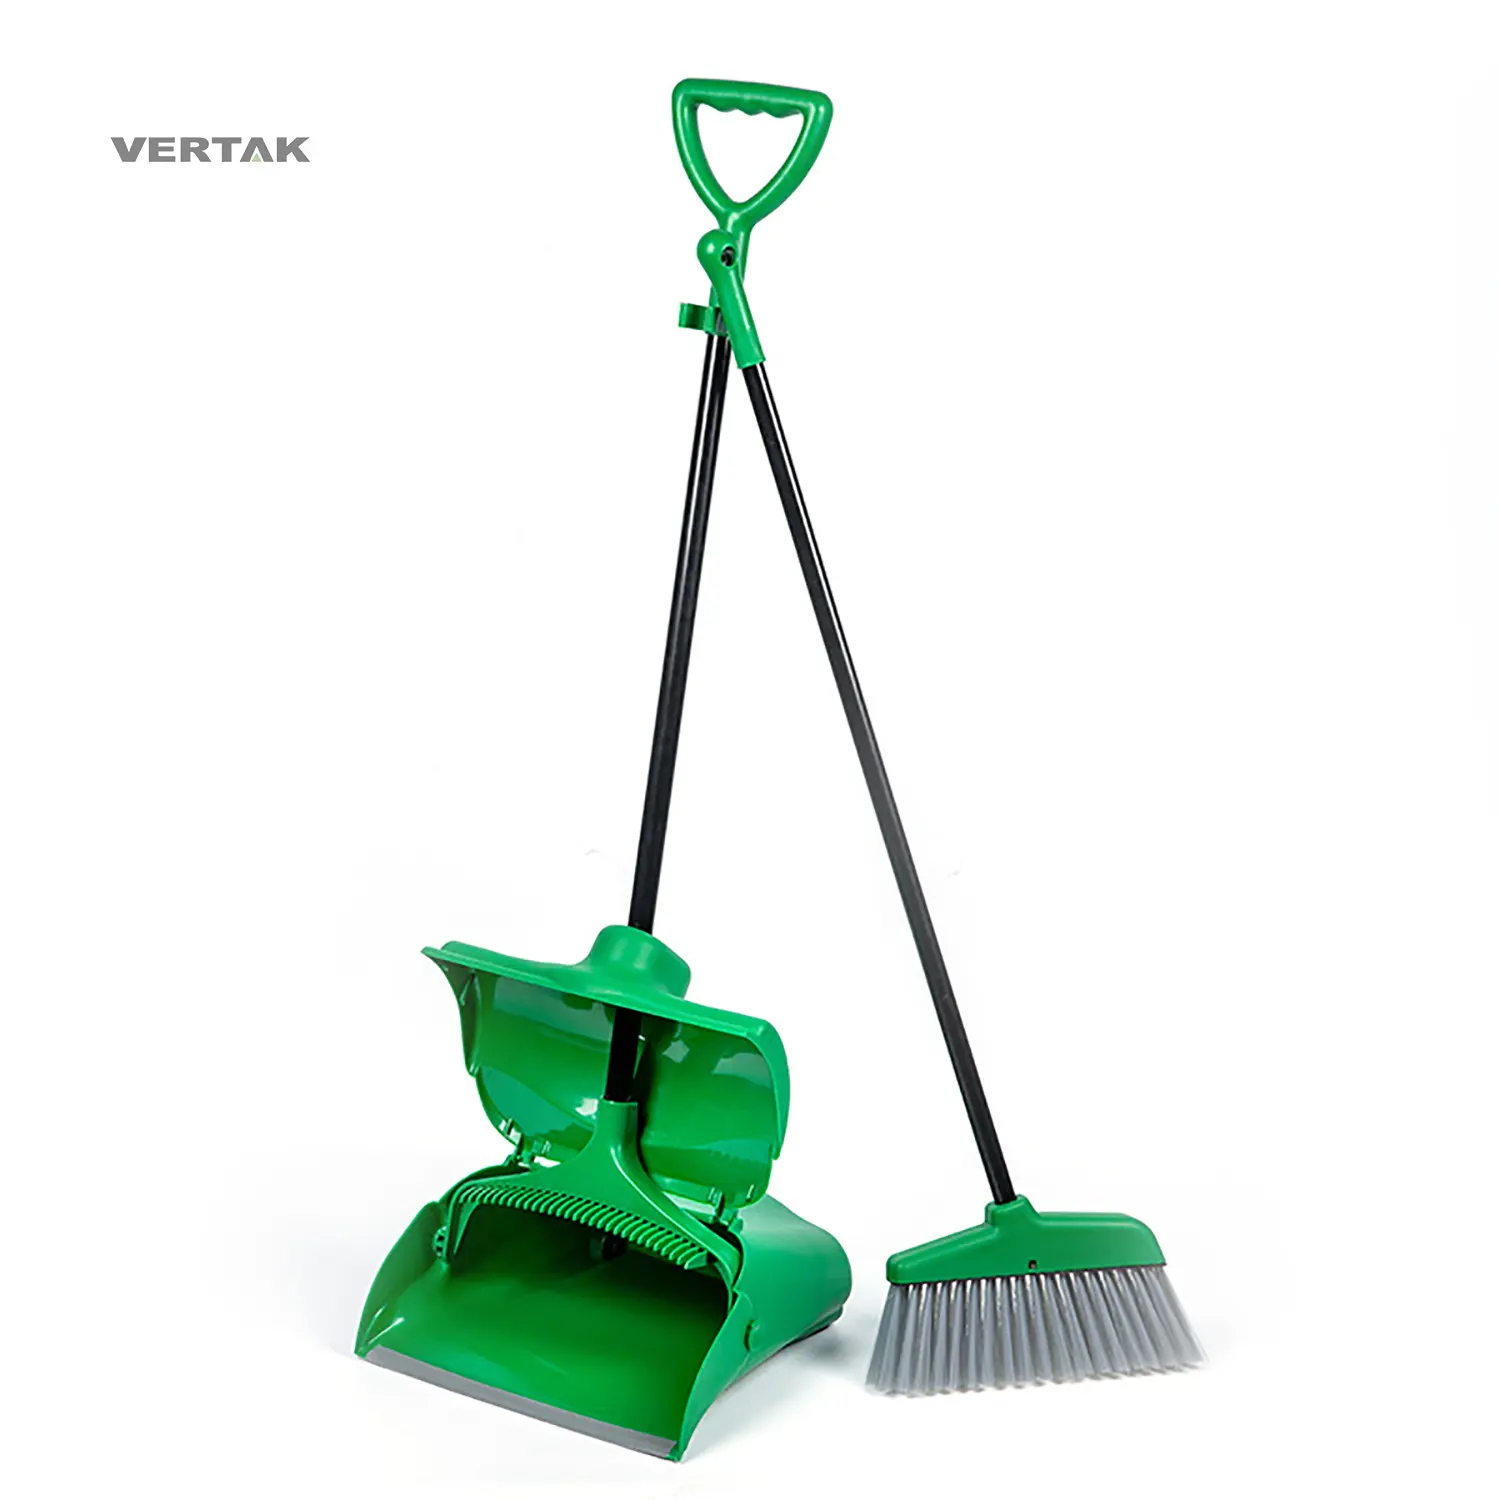 Vertak floor cleaning broom sweeping broom for home house self cleaning broom and dustpan set